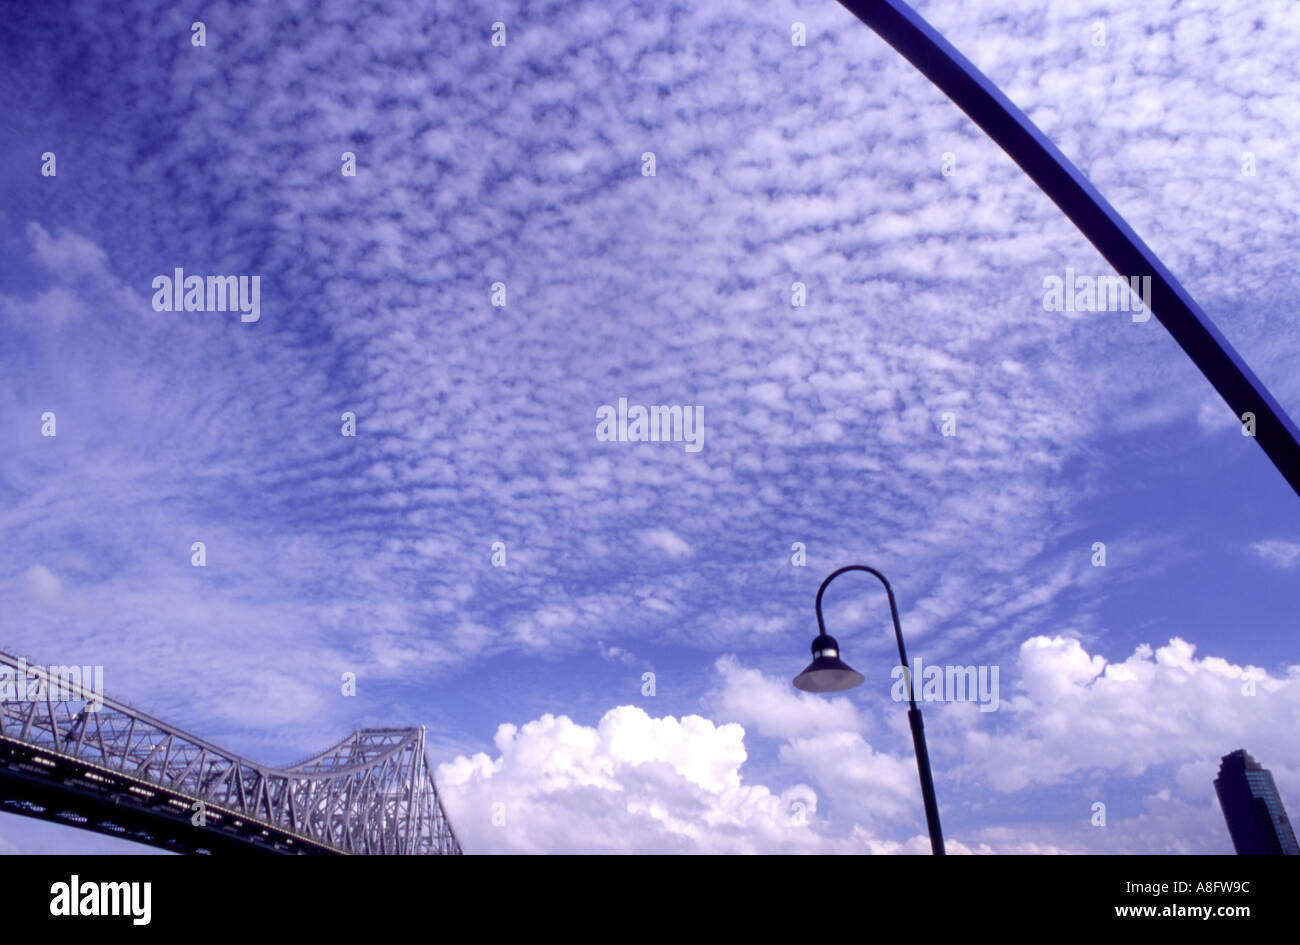 Zusammenfassung von Storey Brücke und städtische Skulptur Brisbane Queensland Australien Stockfoto